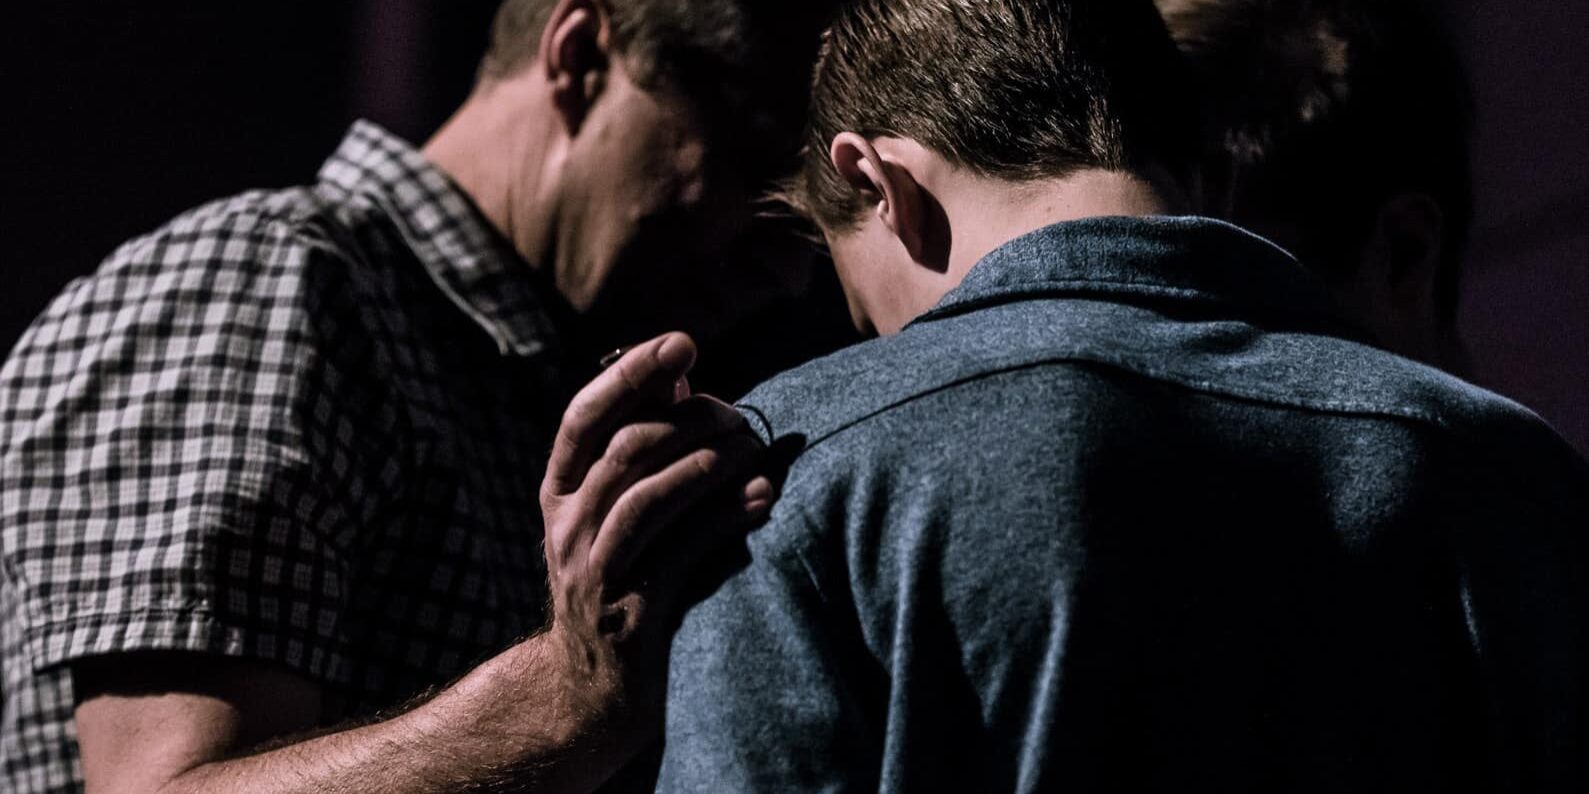 Men praying together.